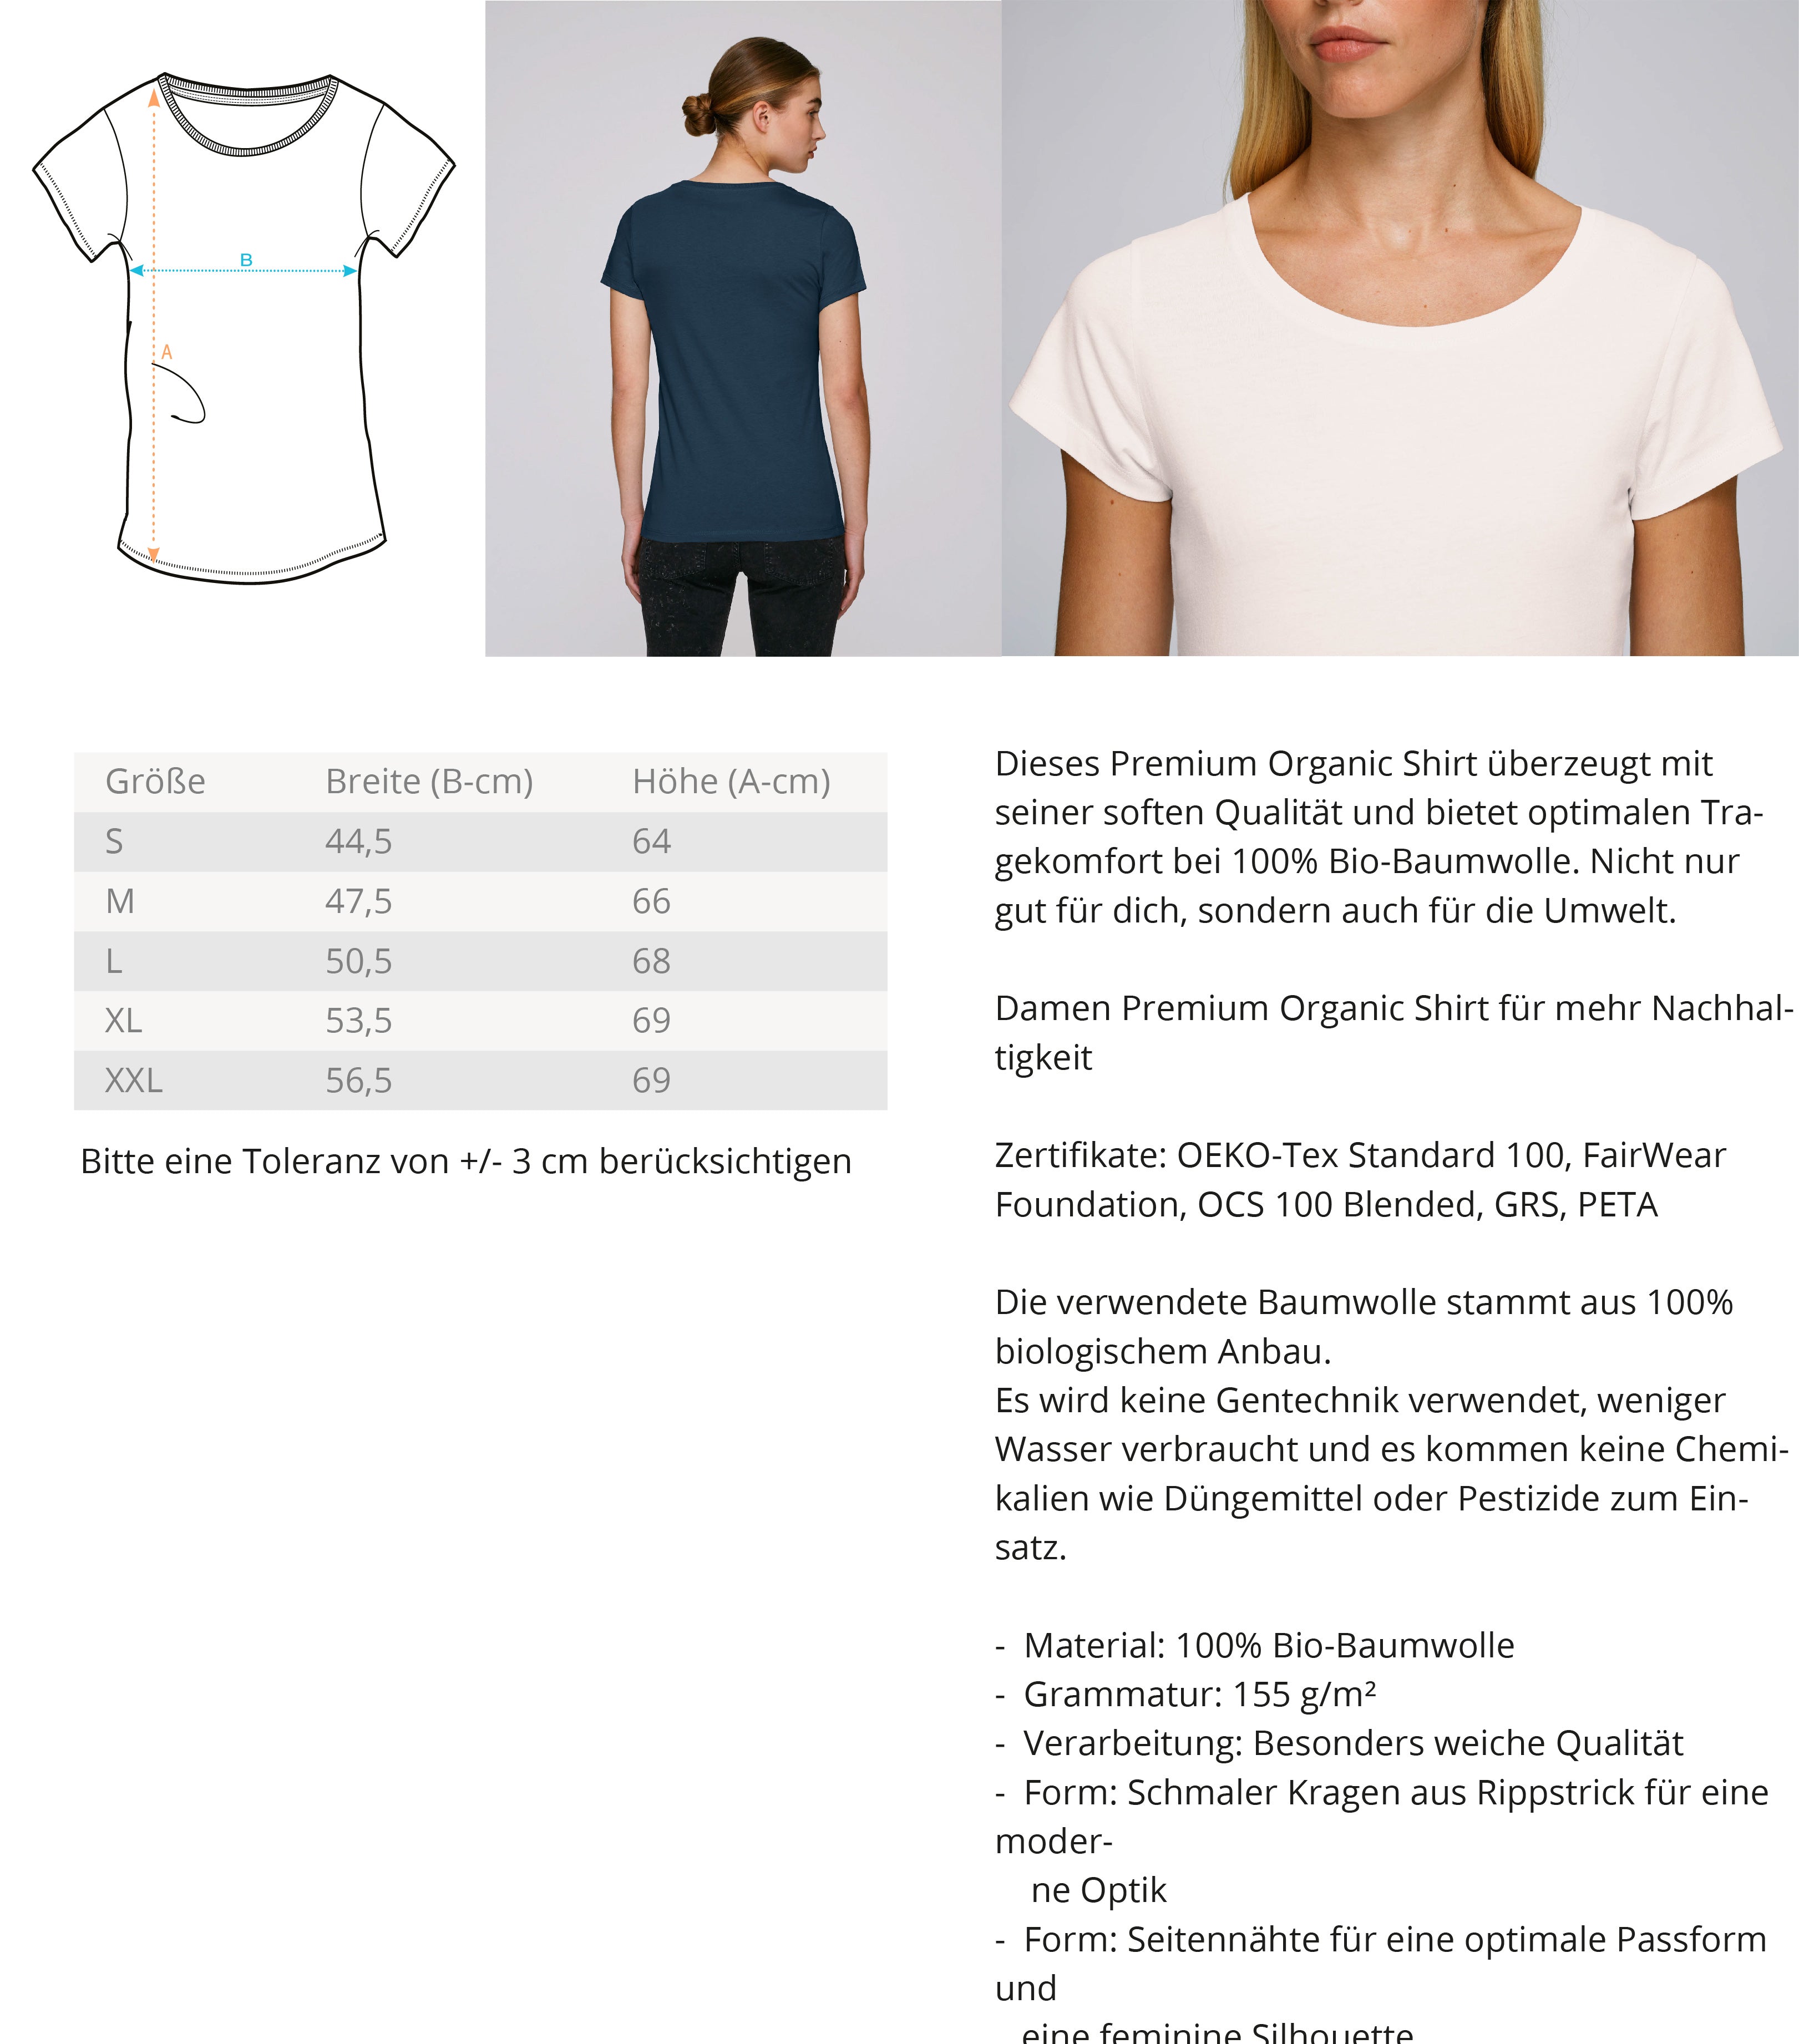 Rehspekt each other  - Damen Premium Organic Shirt